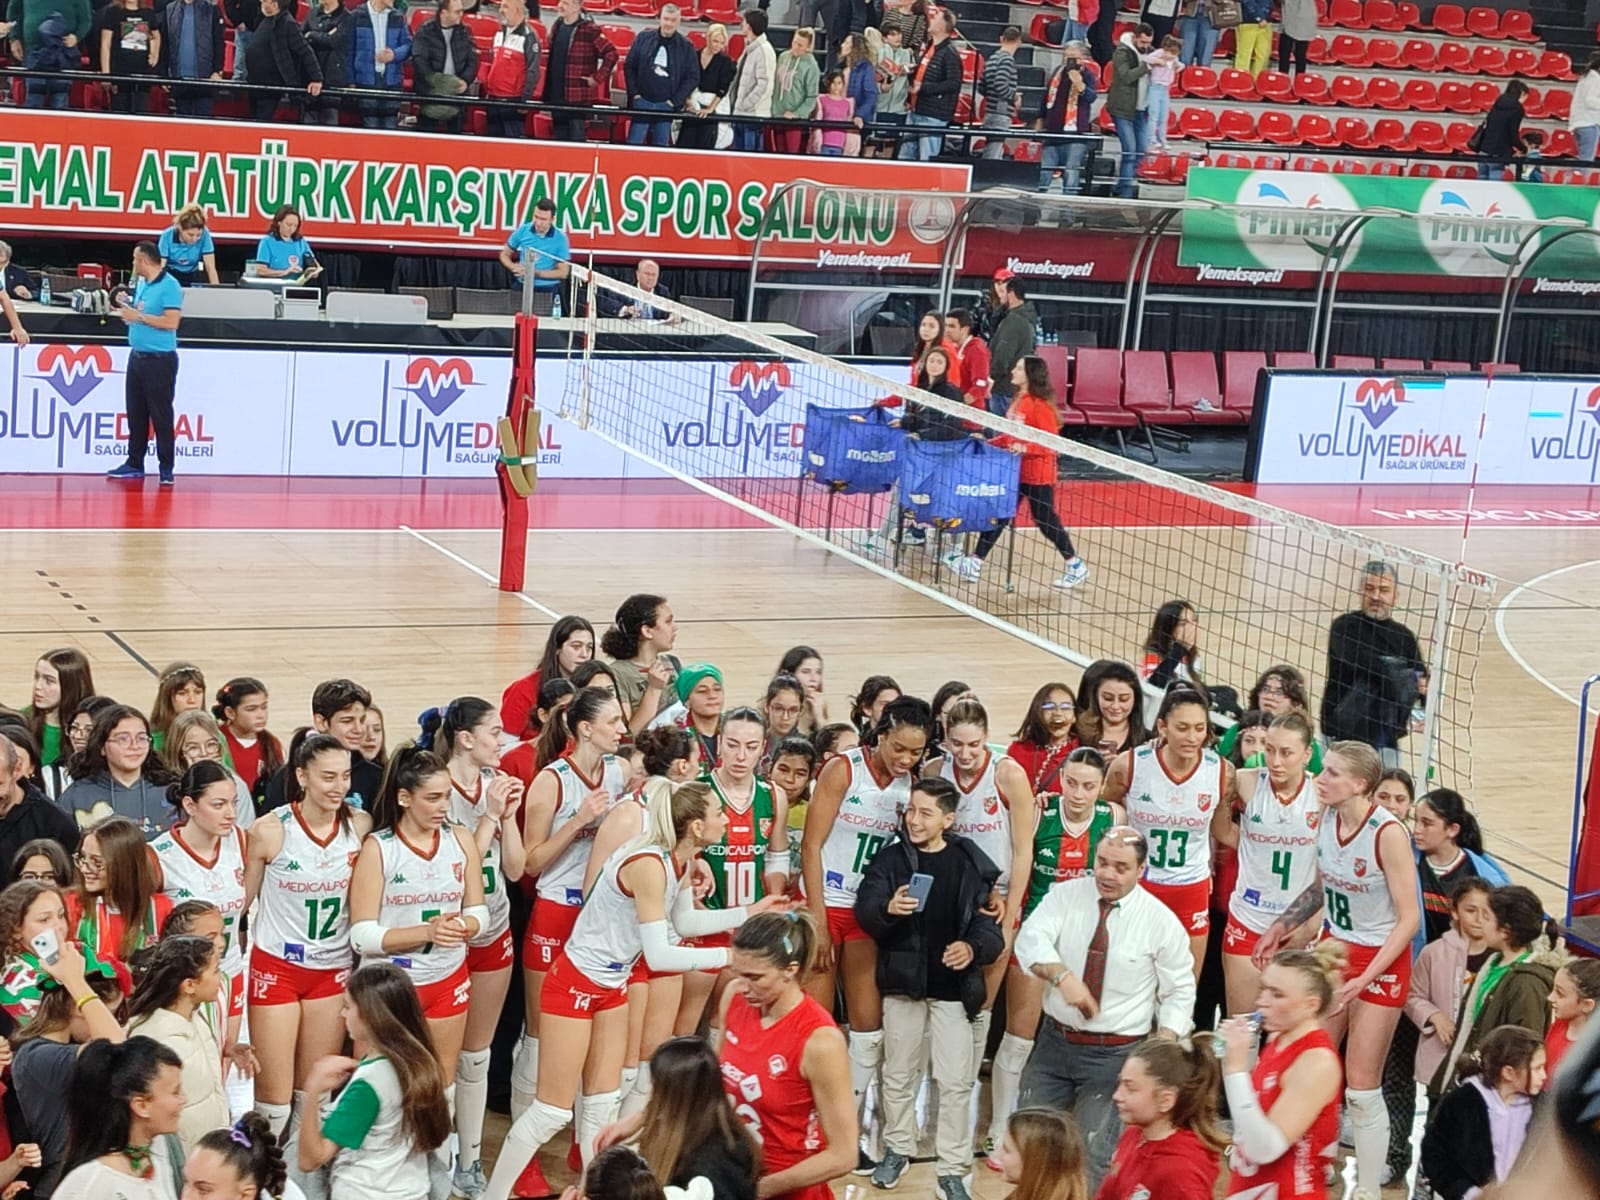 Karşıyaka Medical point bayan voleybol takımı puan toplamaya devam ediyor